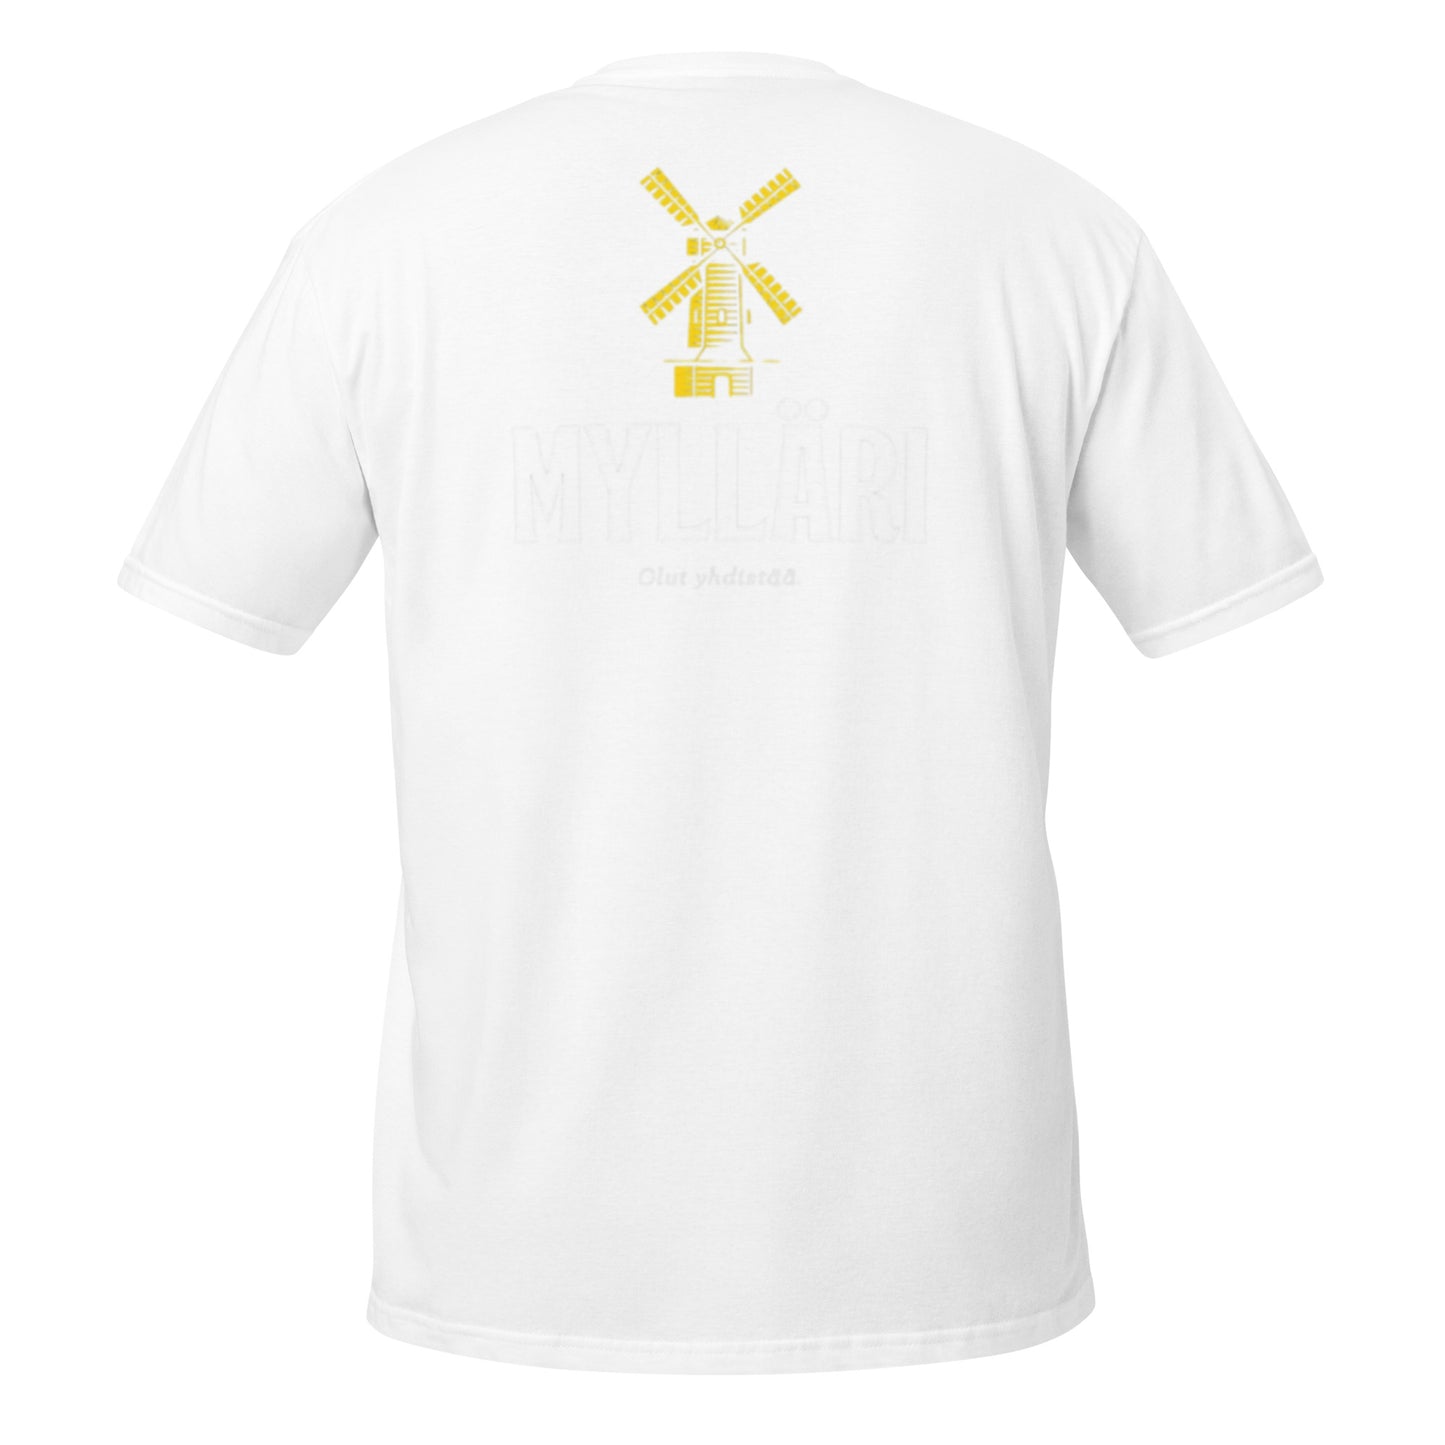 „Myllari“ Unisex-T-Shirt (große Bilder hinten + Brust)